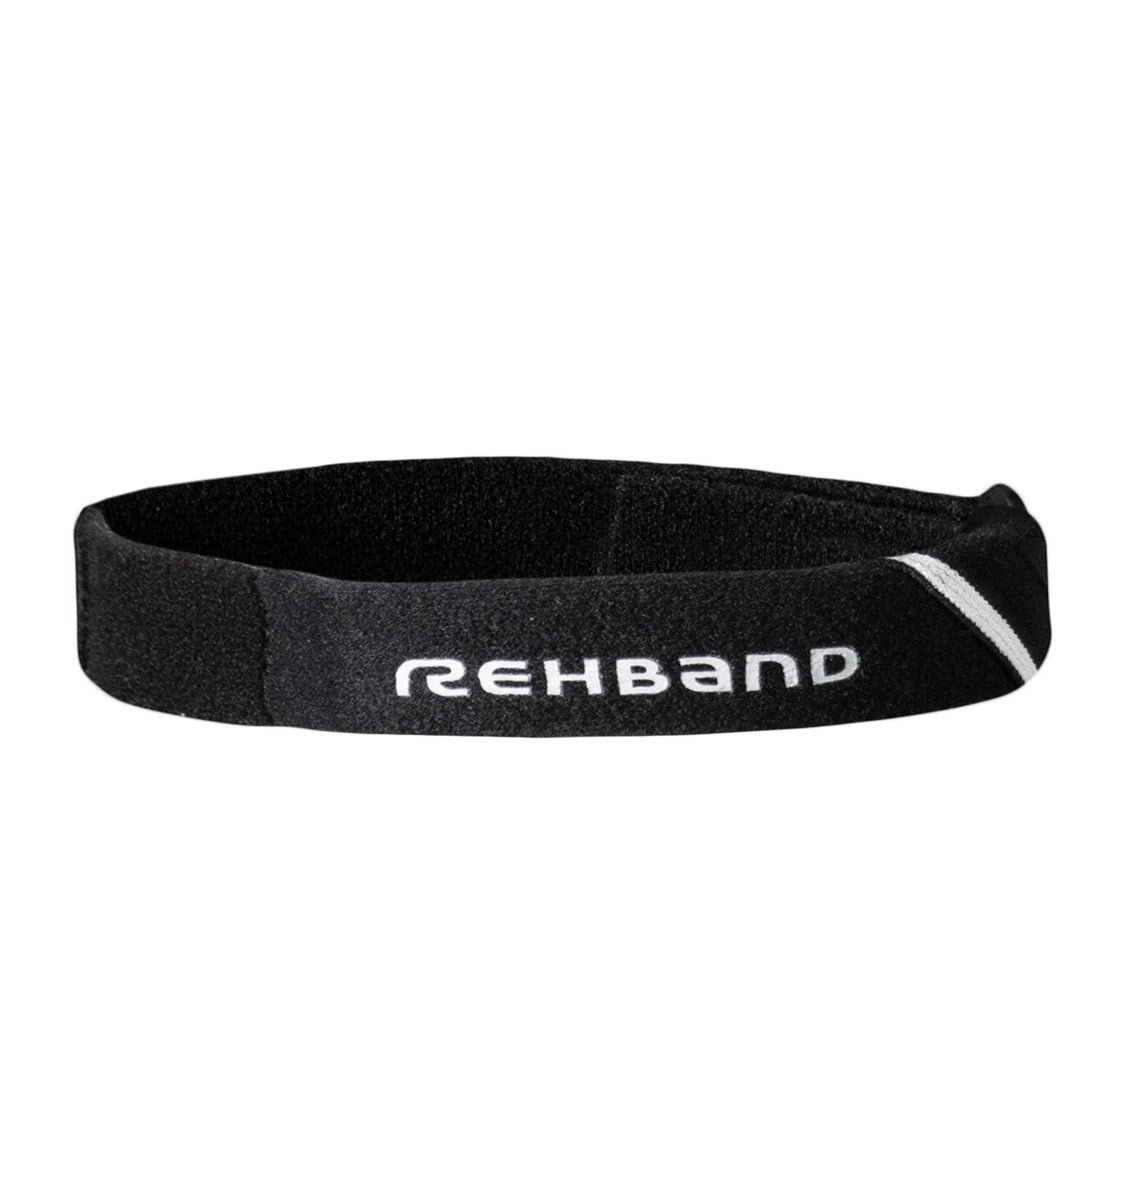 125806-01 Rehband UD Knee Strap Black - Front